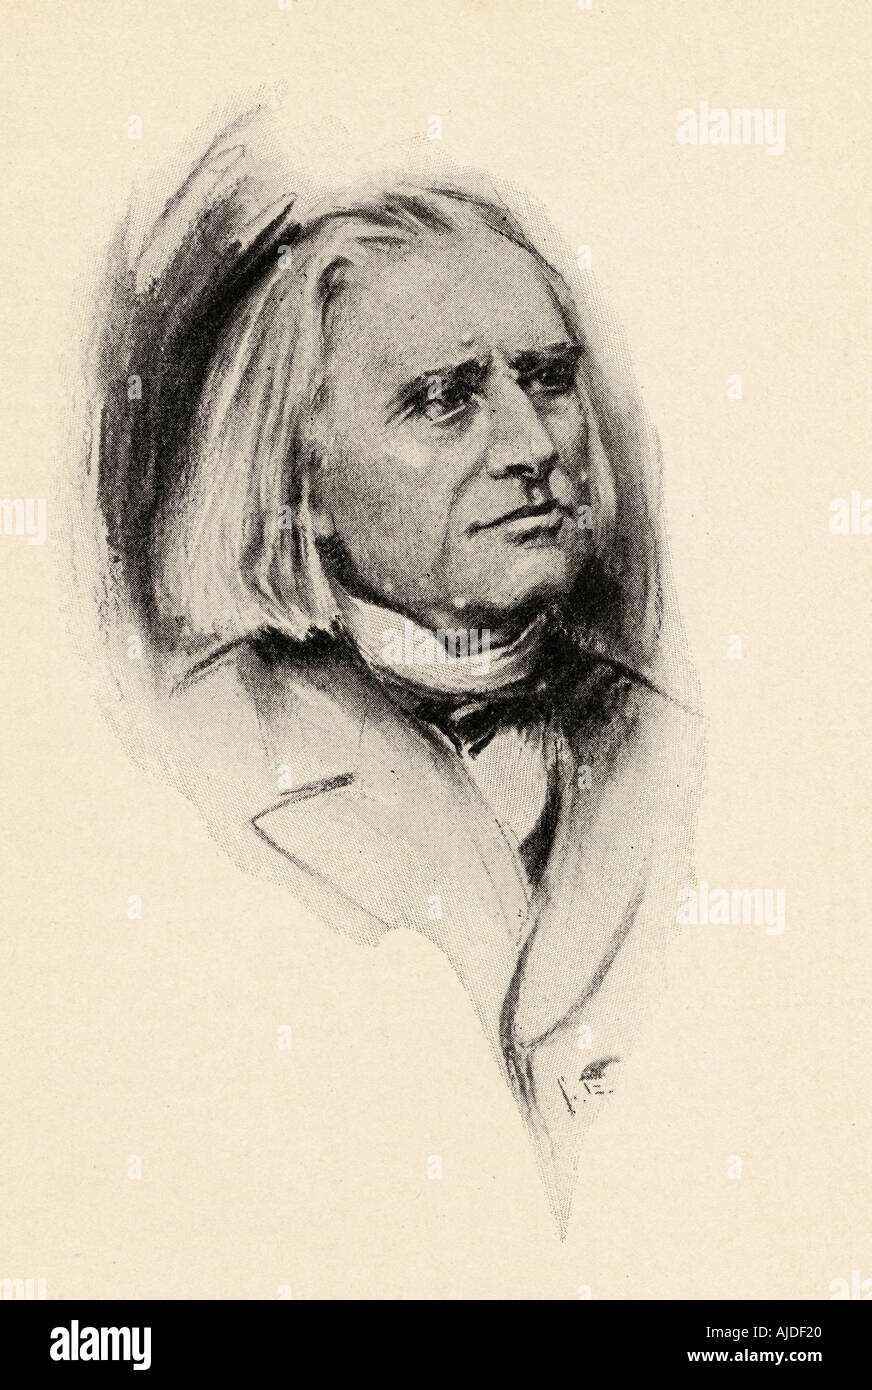 Franz Liszt, 1811 - 1886. Compositeur hongrois, pianiste virtuose, chef d'orchestre, professeur de musique, arrangeur, organiste, philanthrope, auteur, nationaliste. Banque D'Images